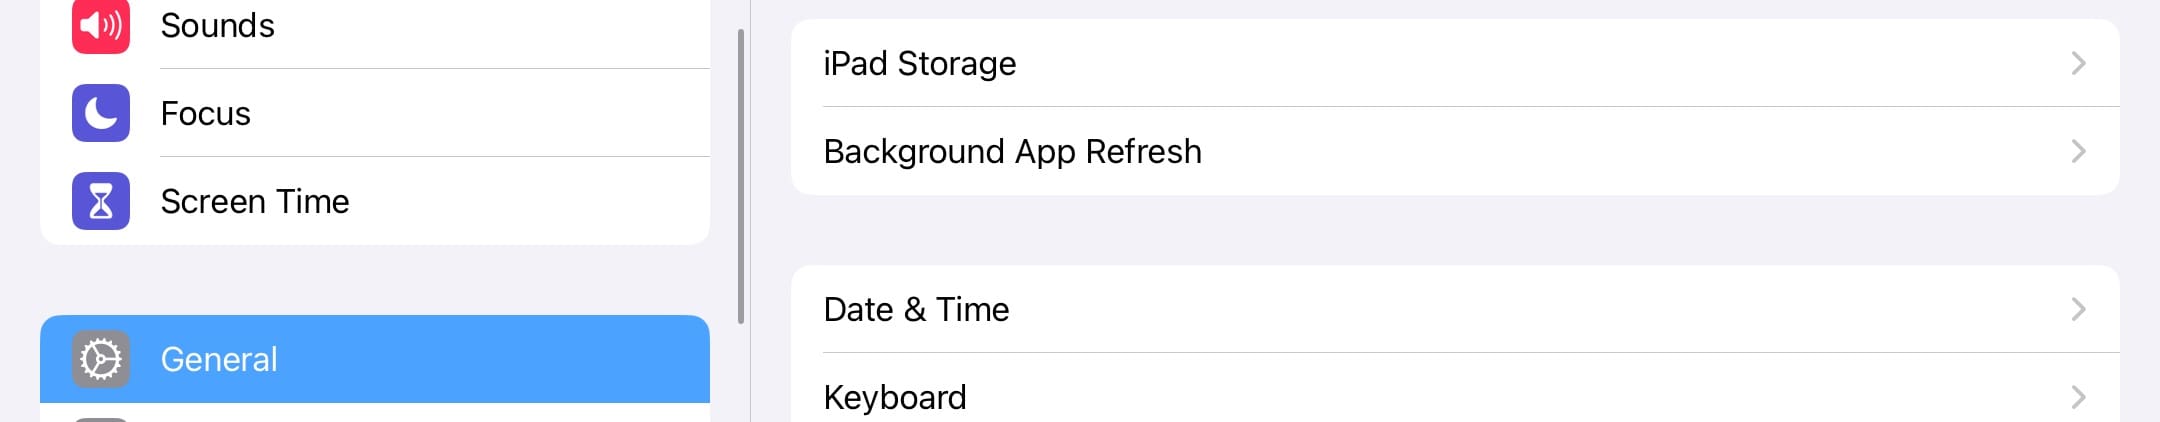 Select iPad Storage in Settings